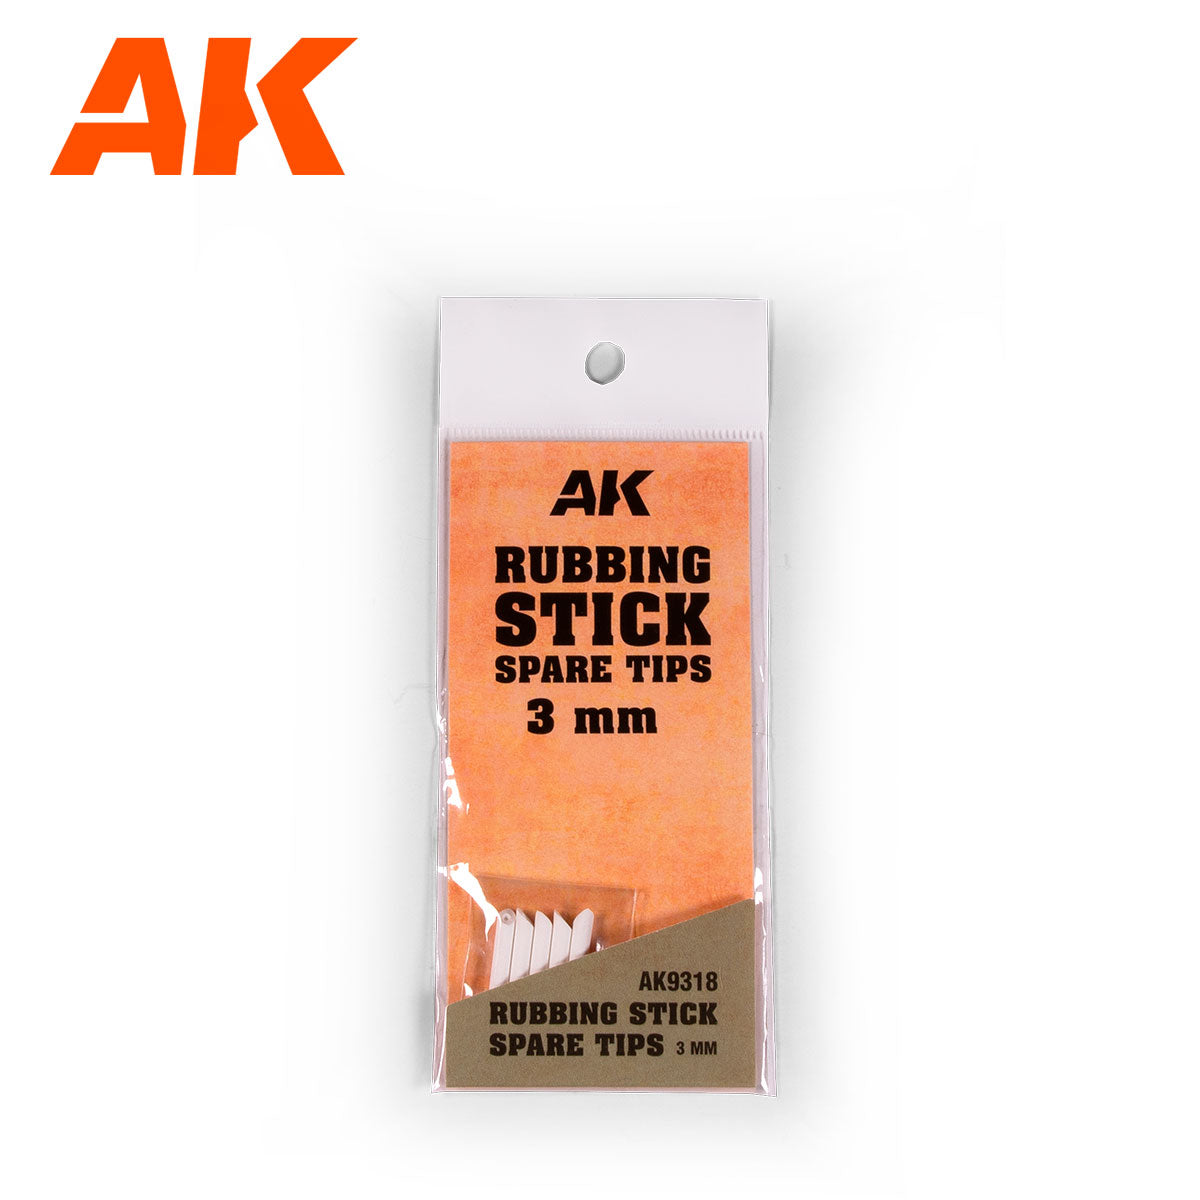 AK9318 - Rubbing Stick Spare Tips (3mm)